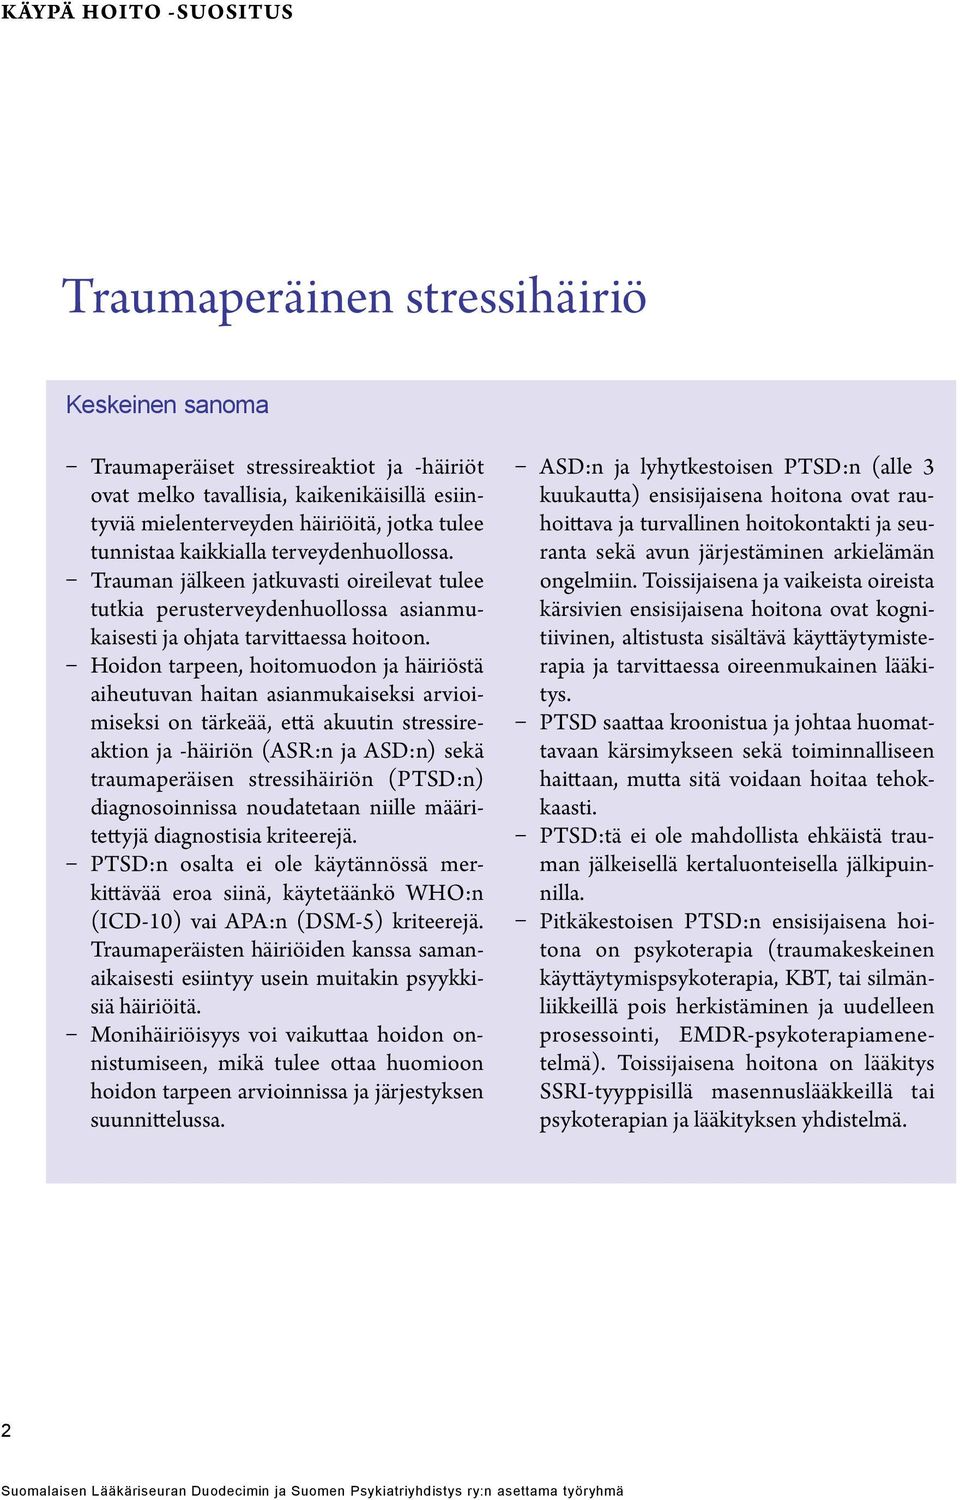 Hoidon tarpeen, hoitomuodon ja häiriöstä aiheutuvan haitan asianmukaiseksi arvioimiseksi on tärkeää, että akuutin stressireaktion ja -häiriön (ASR:n ja ASD:n) sekä traumaperäisen stressihäiriön